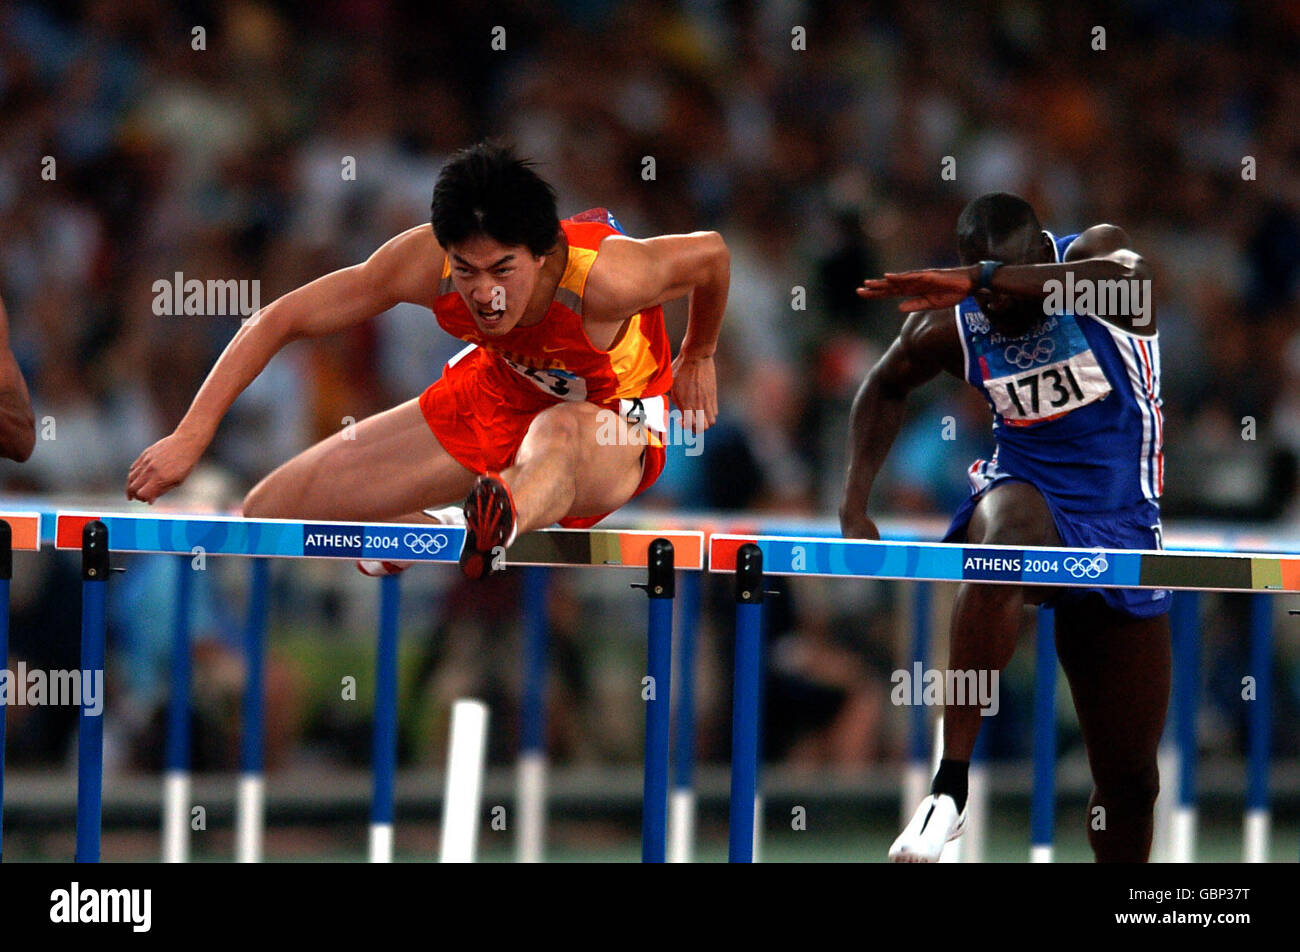 Atletica - Giochi Olimpici di Atene 2004 - Hurdles da 110 m - finale. Il Xiang Liu cinese si è fatto strada per rompere il record olimpico e vincere la medaglia d'oro nei 110m ostacoli Foto Stock